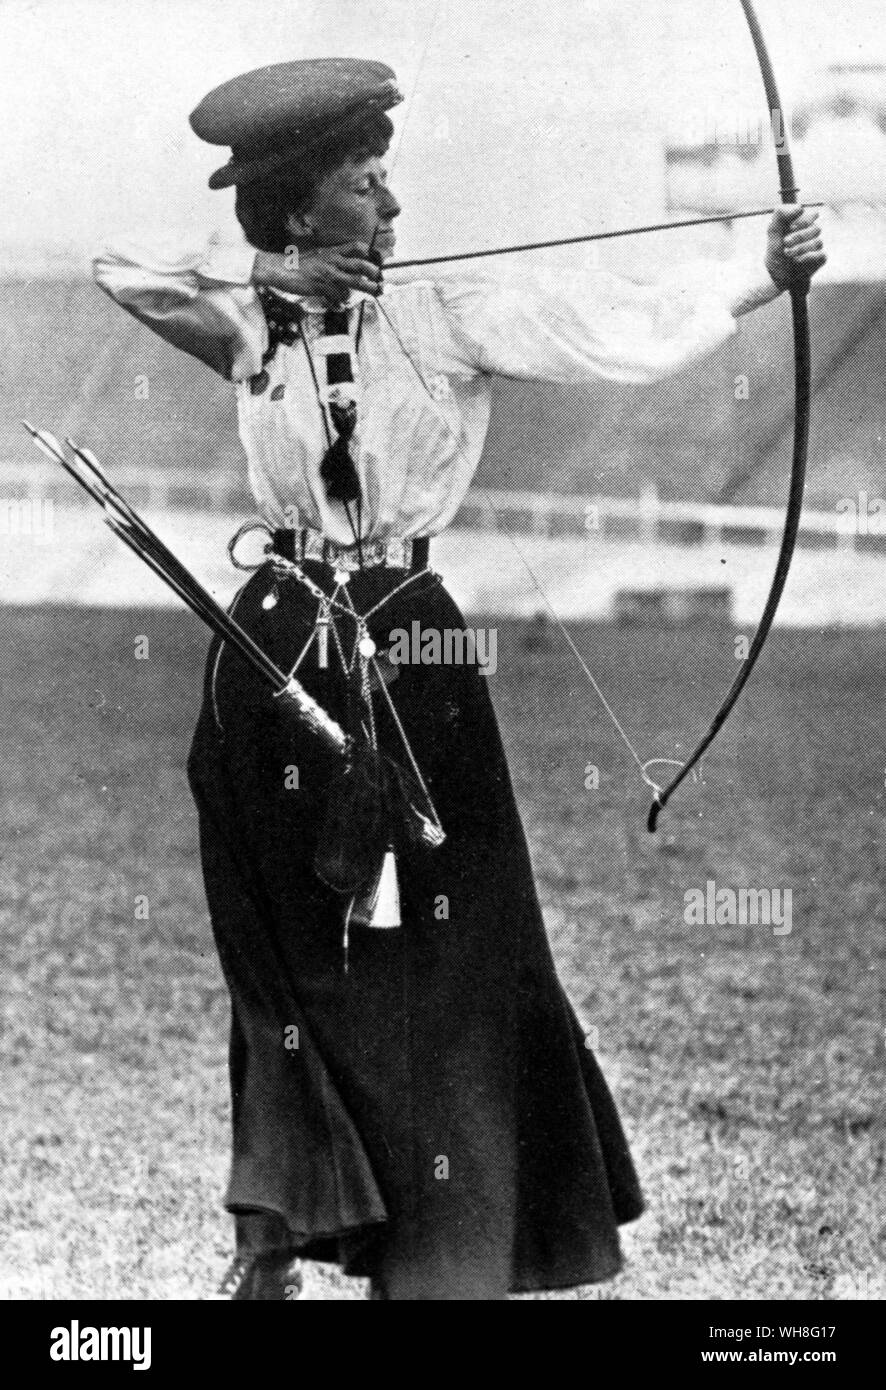 Olympischen Spiele in London 1908. Miss Q Newall (Großbritannien), Sieger der nationalen Runde. Alle Bogenschießen Konkurrenten Briten waren, und der Gewinner, Sybil Queenie Newall, ist die älteste Frau, die jemals eine olympische Goldmedaille zu gewinnen, wurde sie im Alter von 53. Die Olympischen Spiele Seite 72. Stockfoto